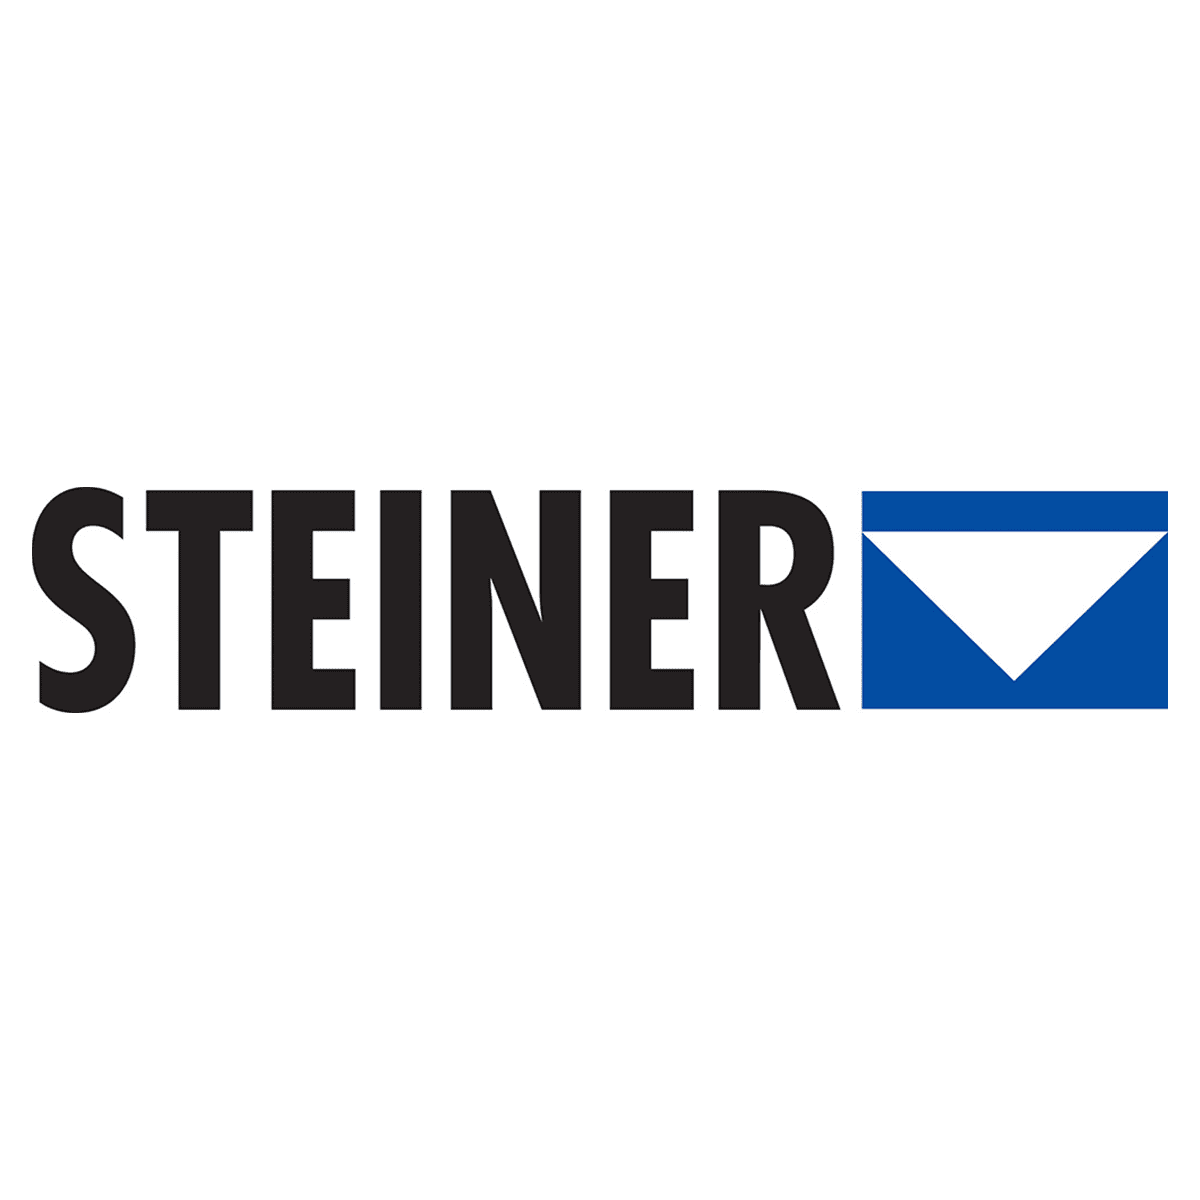 steiner-logo